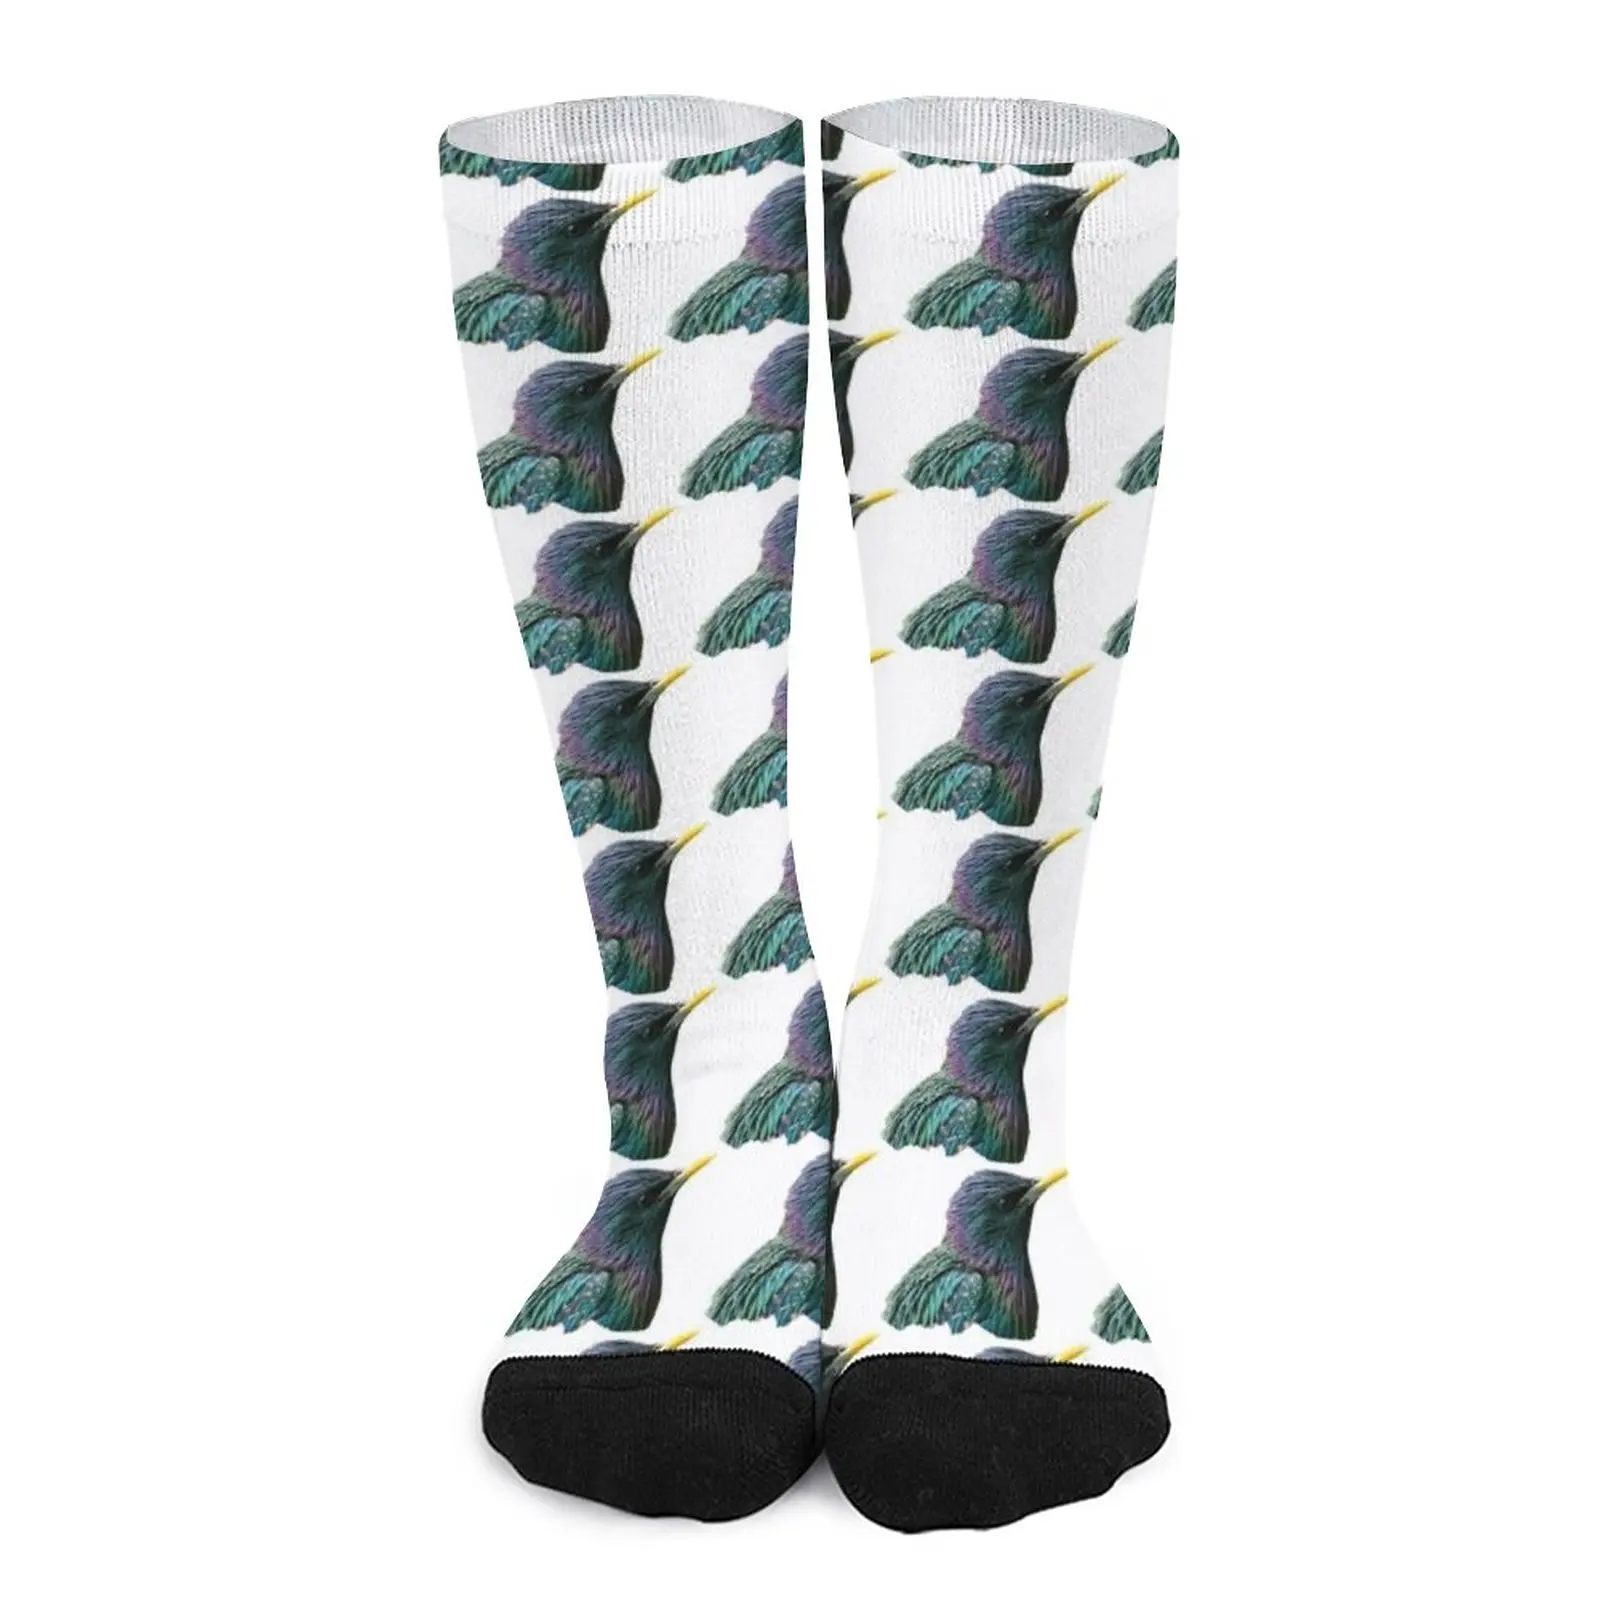 My Starling Socks Women socks ankle socks boxing socks ankle socks floor socks cartoon socks hiking women s socks men s